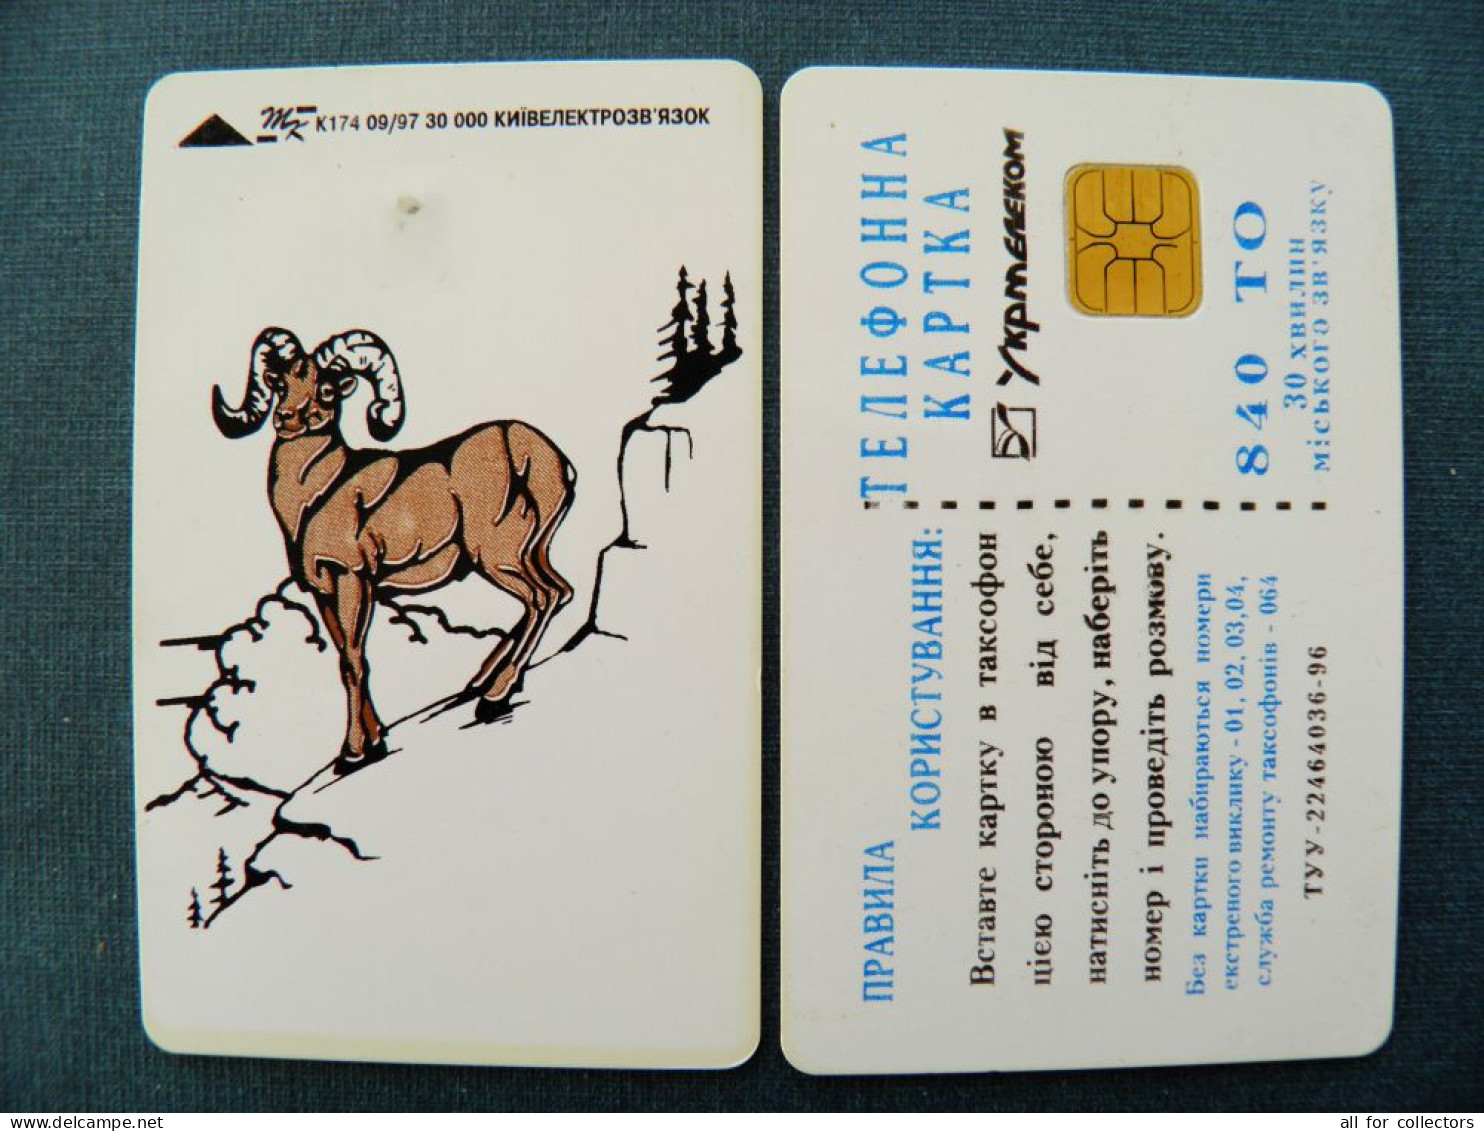 Phonecard Chip Animals Mountains Goat K174 09/97 30,000ex. 840 Units UKRAINE - Ukraine